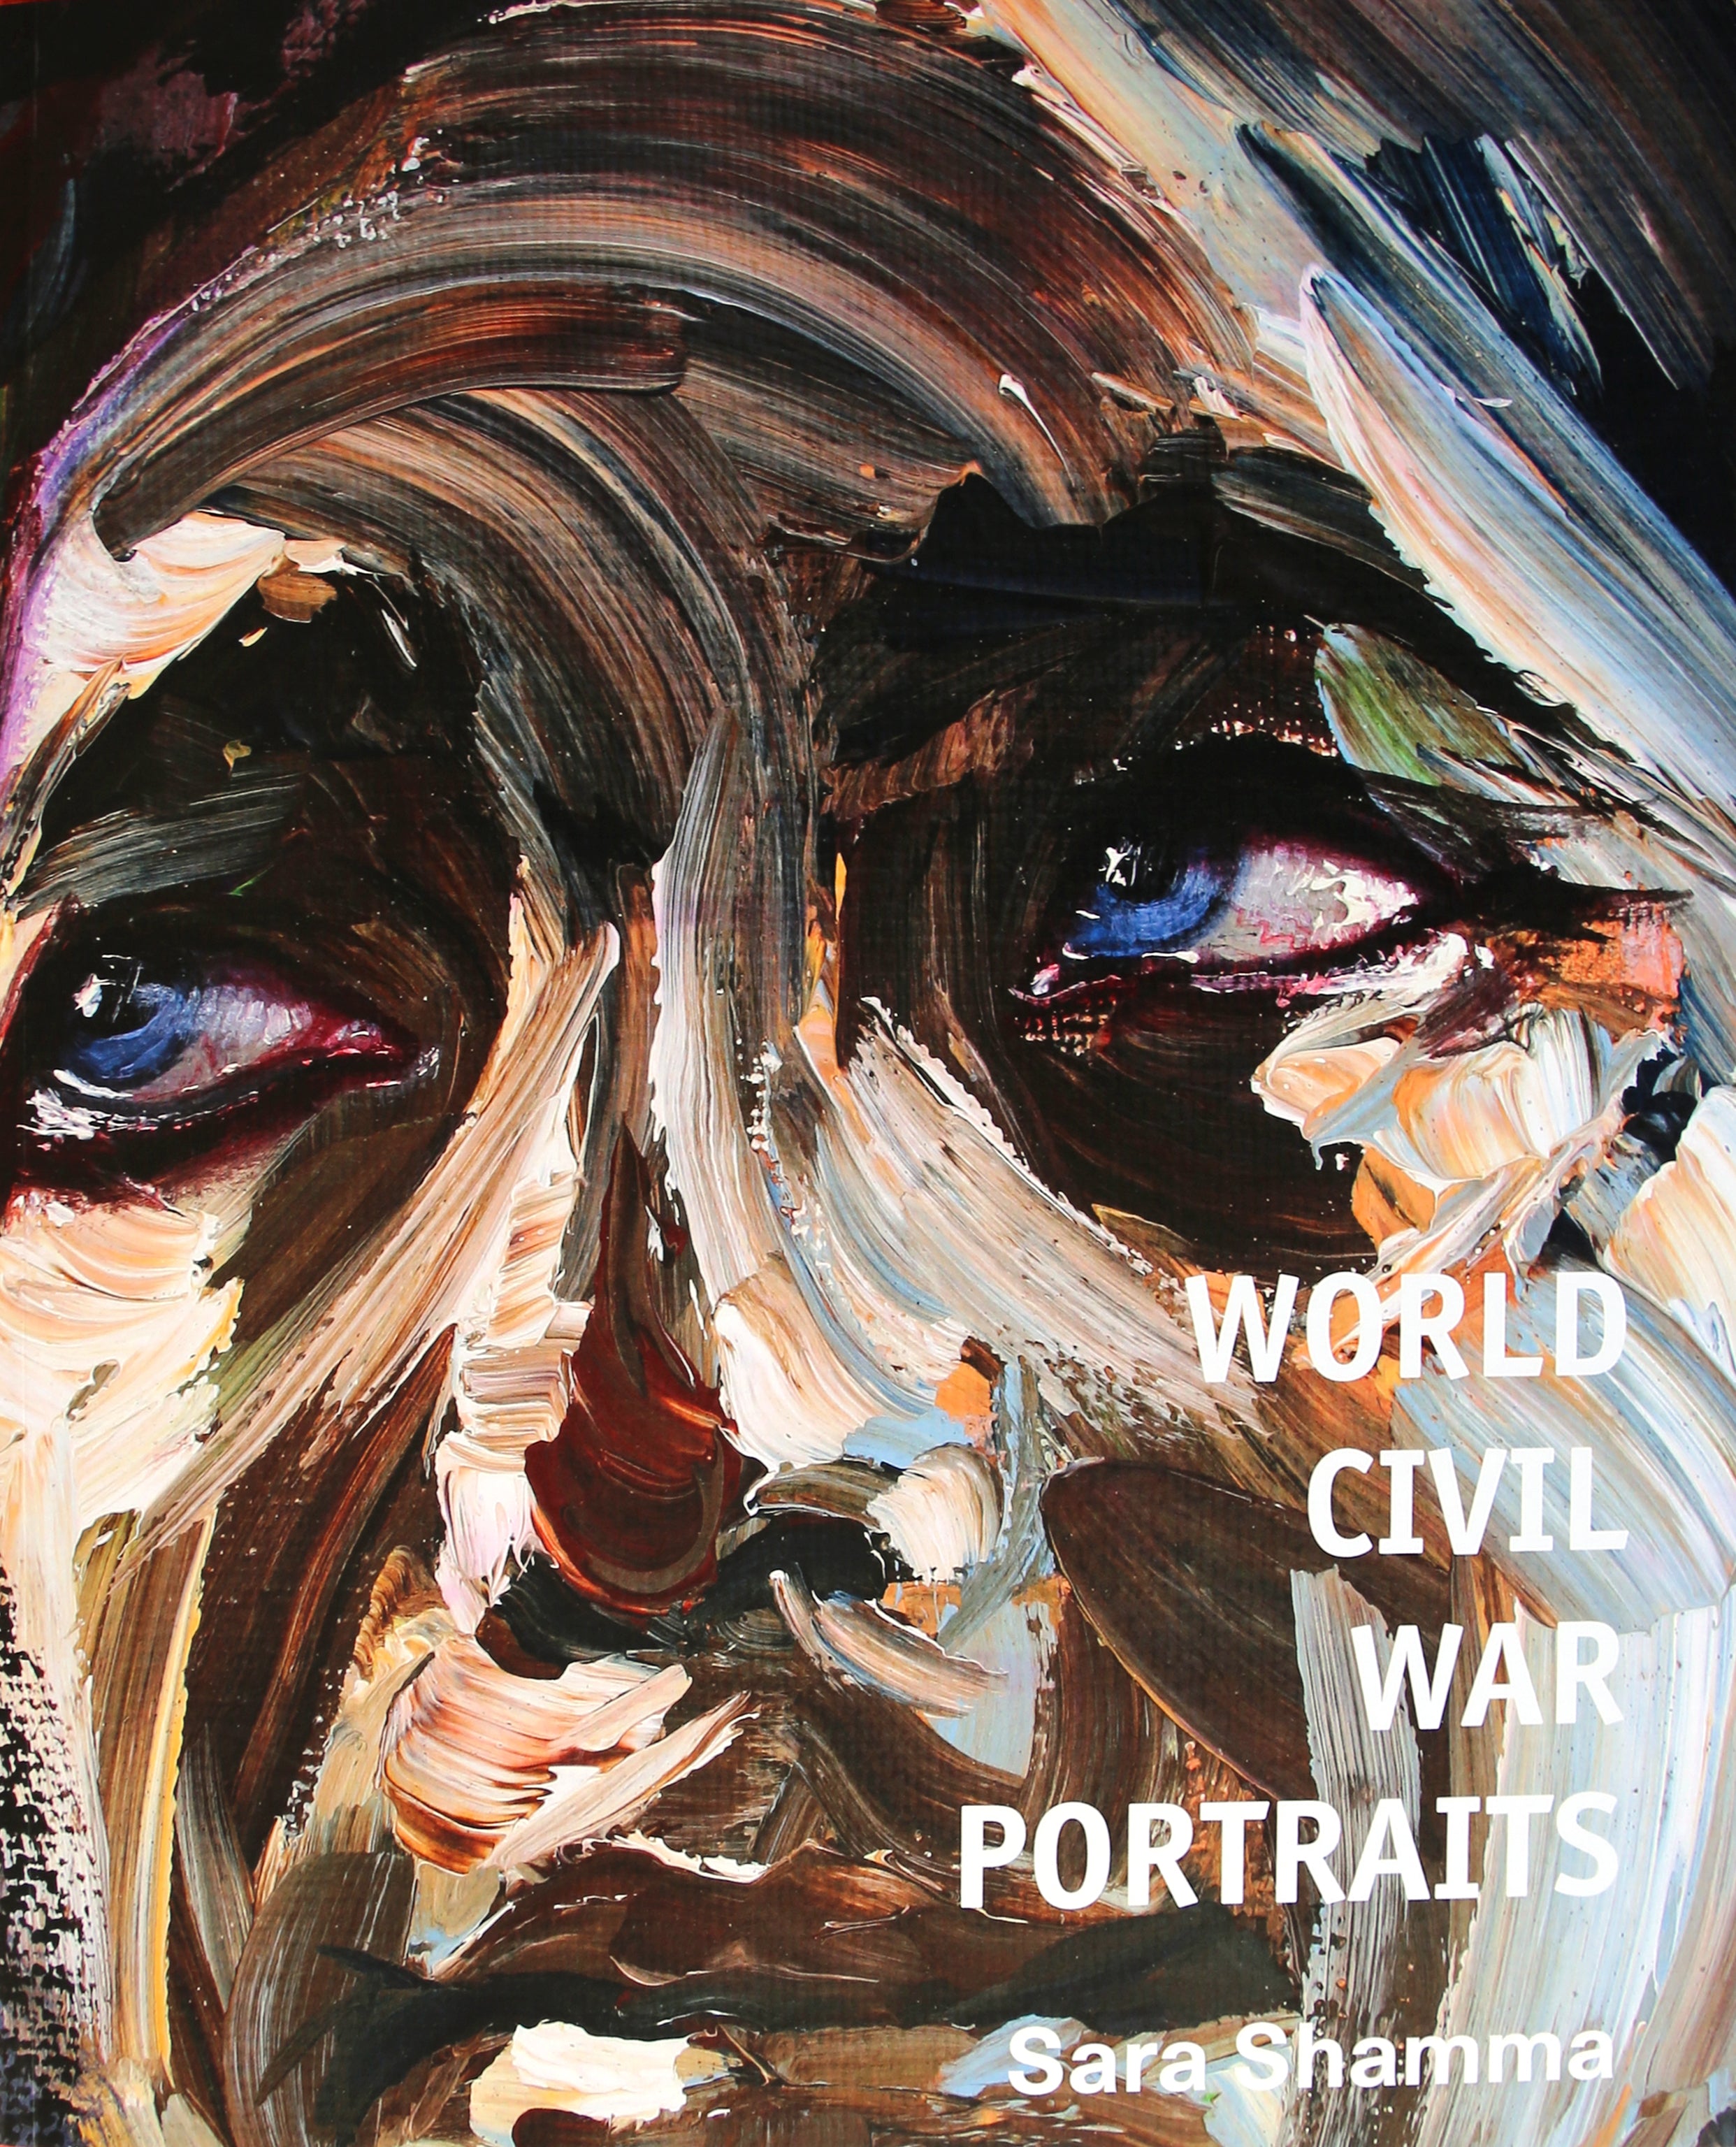 World Civil War Portraits Sara Shamma 2015